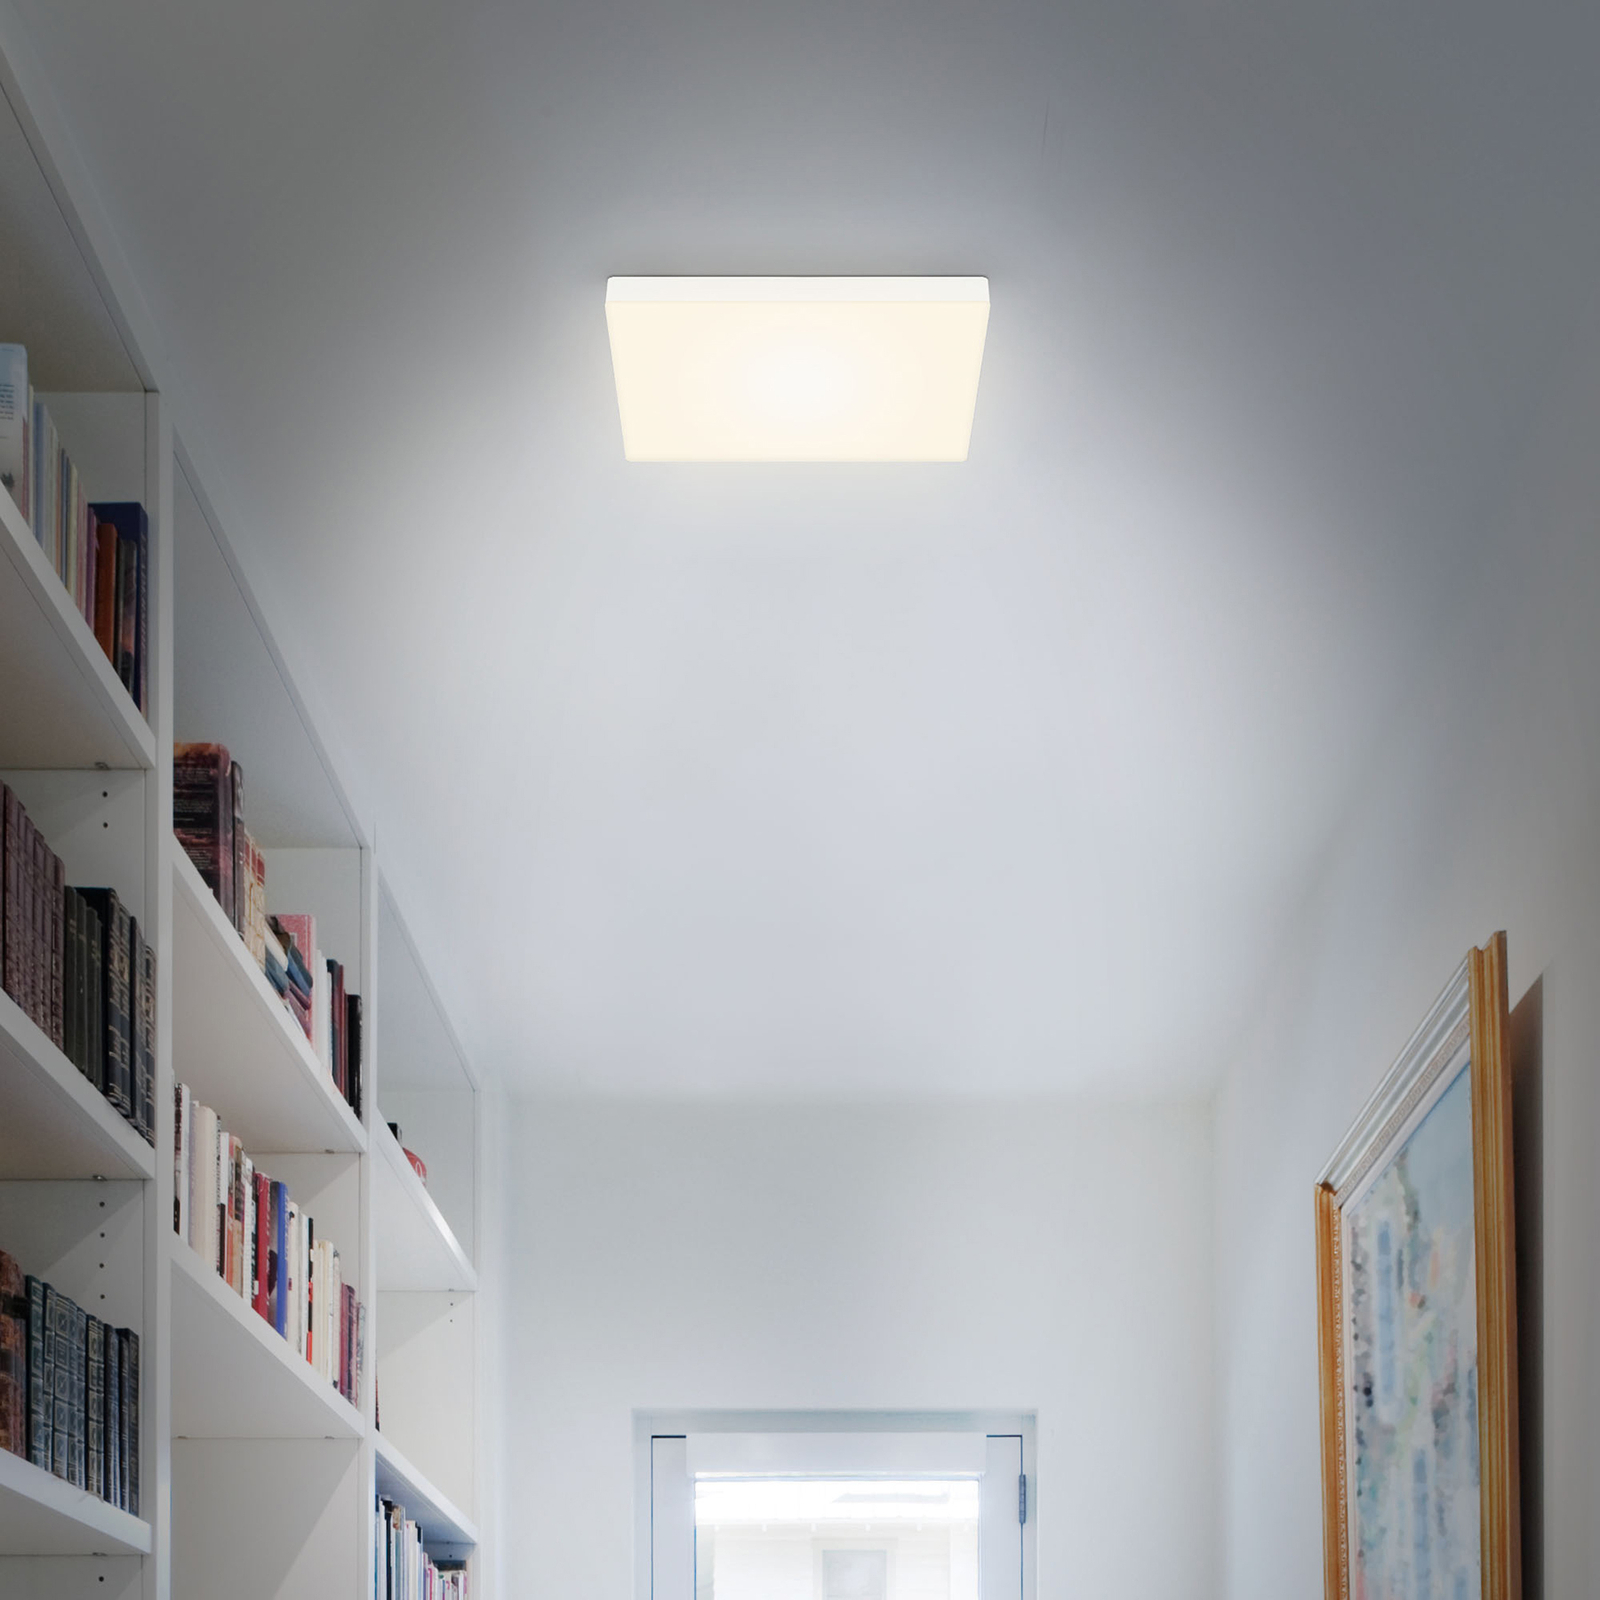 LED лампа за таван Flame, 3000К, 28,7x28,7 см, бяла